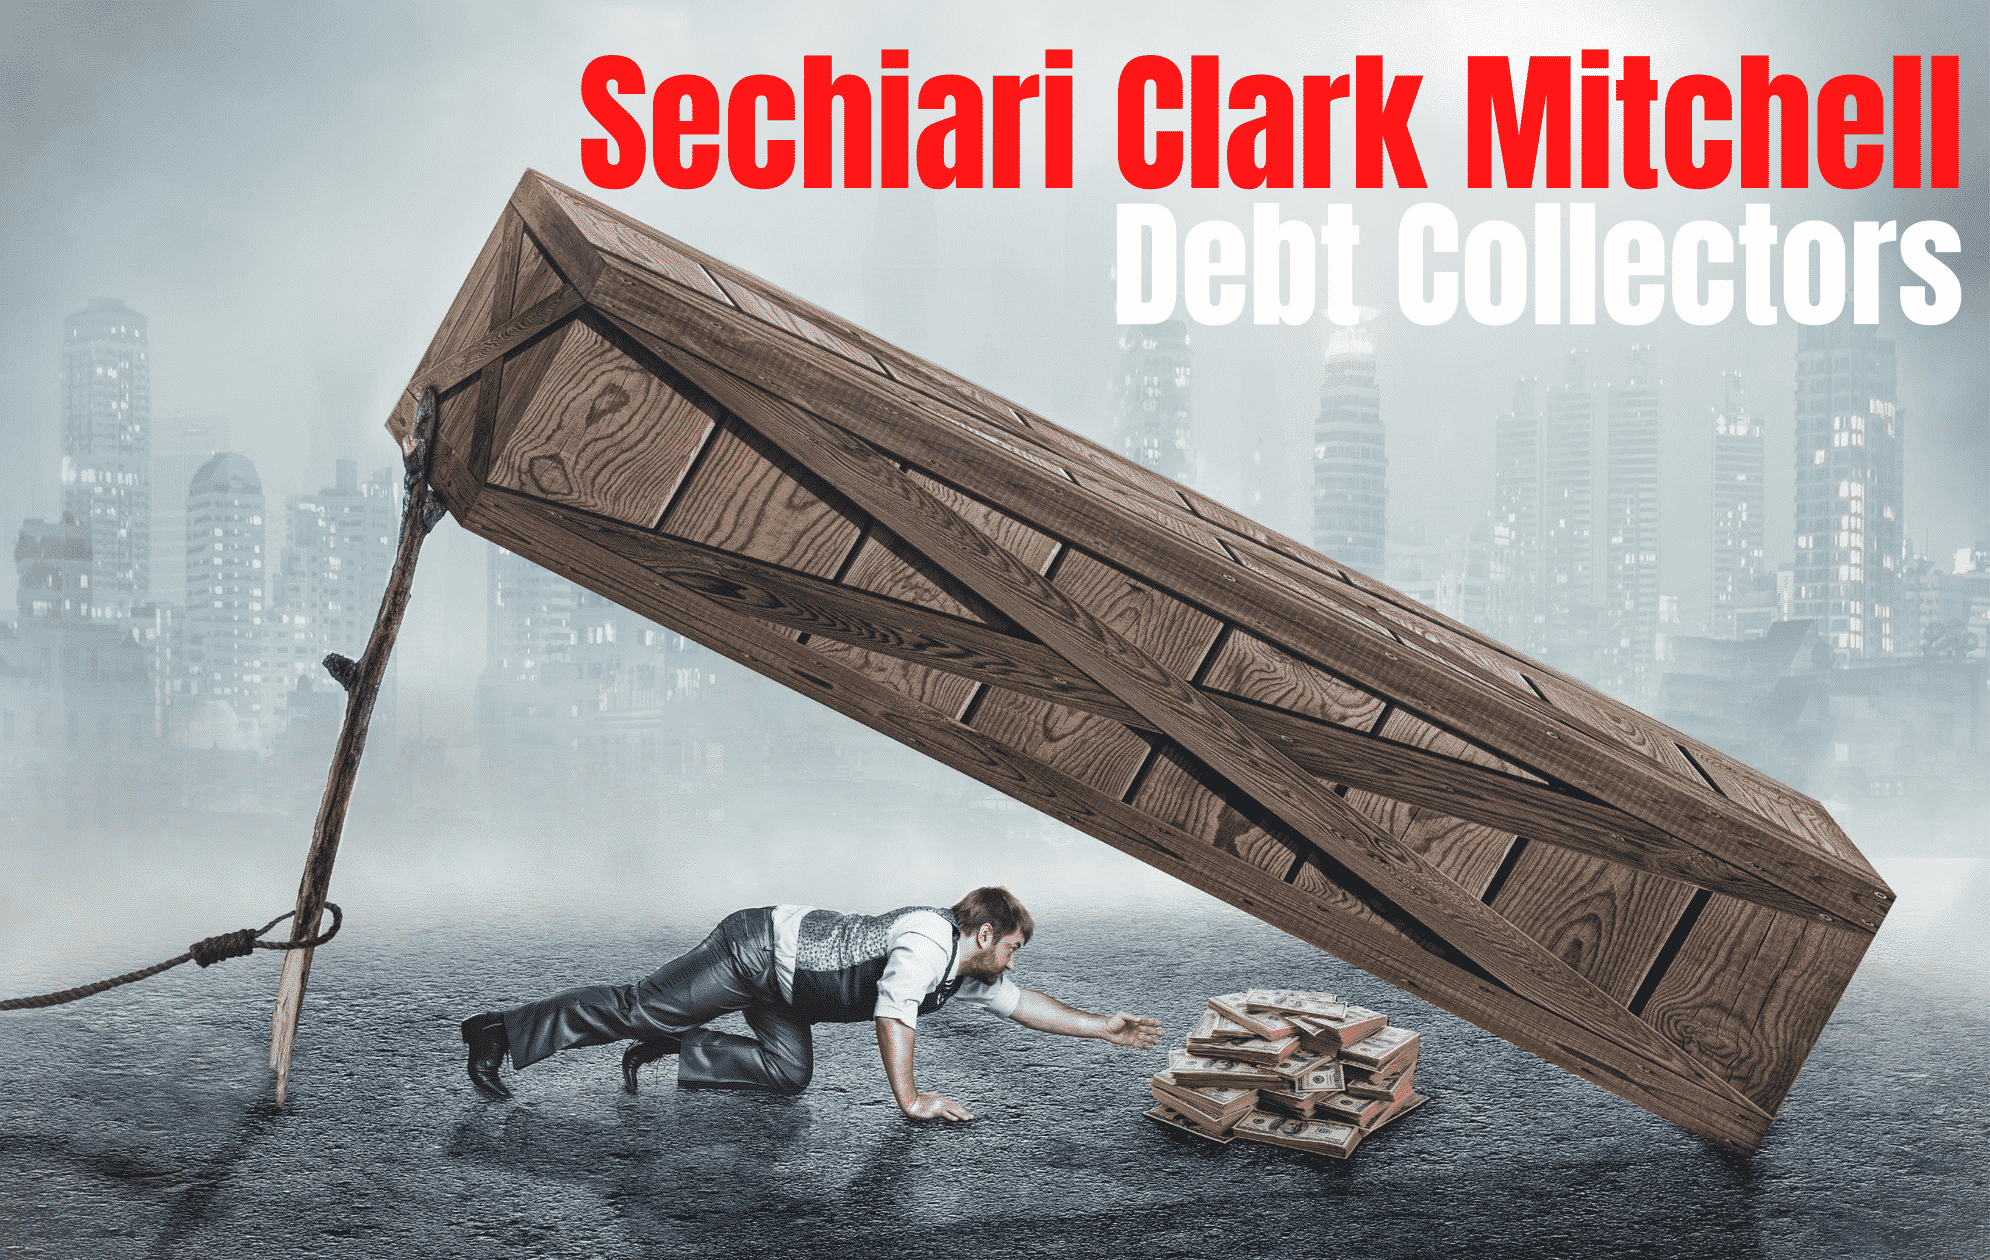 sechiari-clark-mitchell-solicitors-debt-collectors